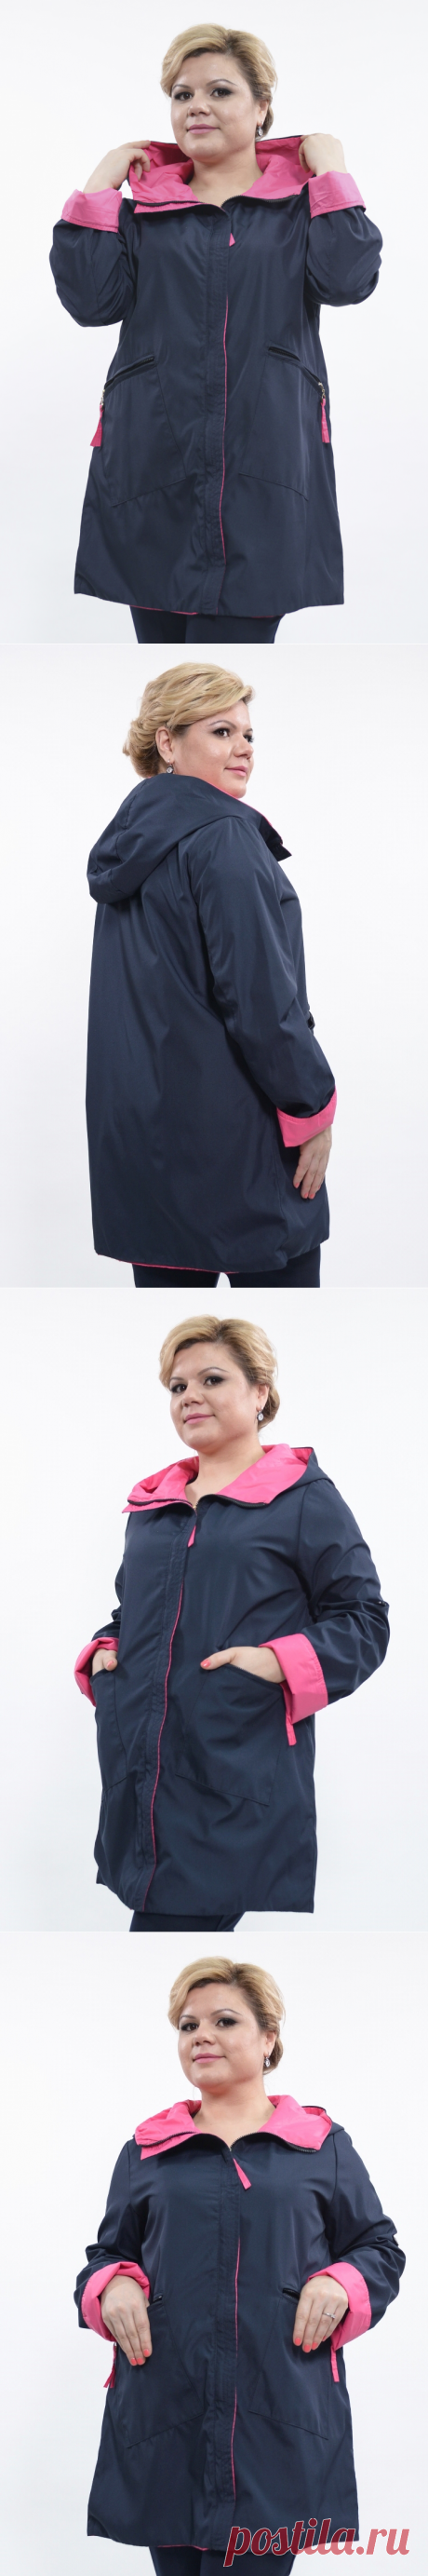 Куртка-6142– купить в интернет-магазине, цена, заказ online